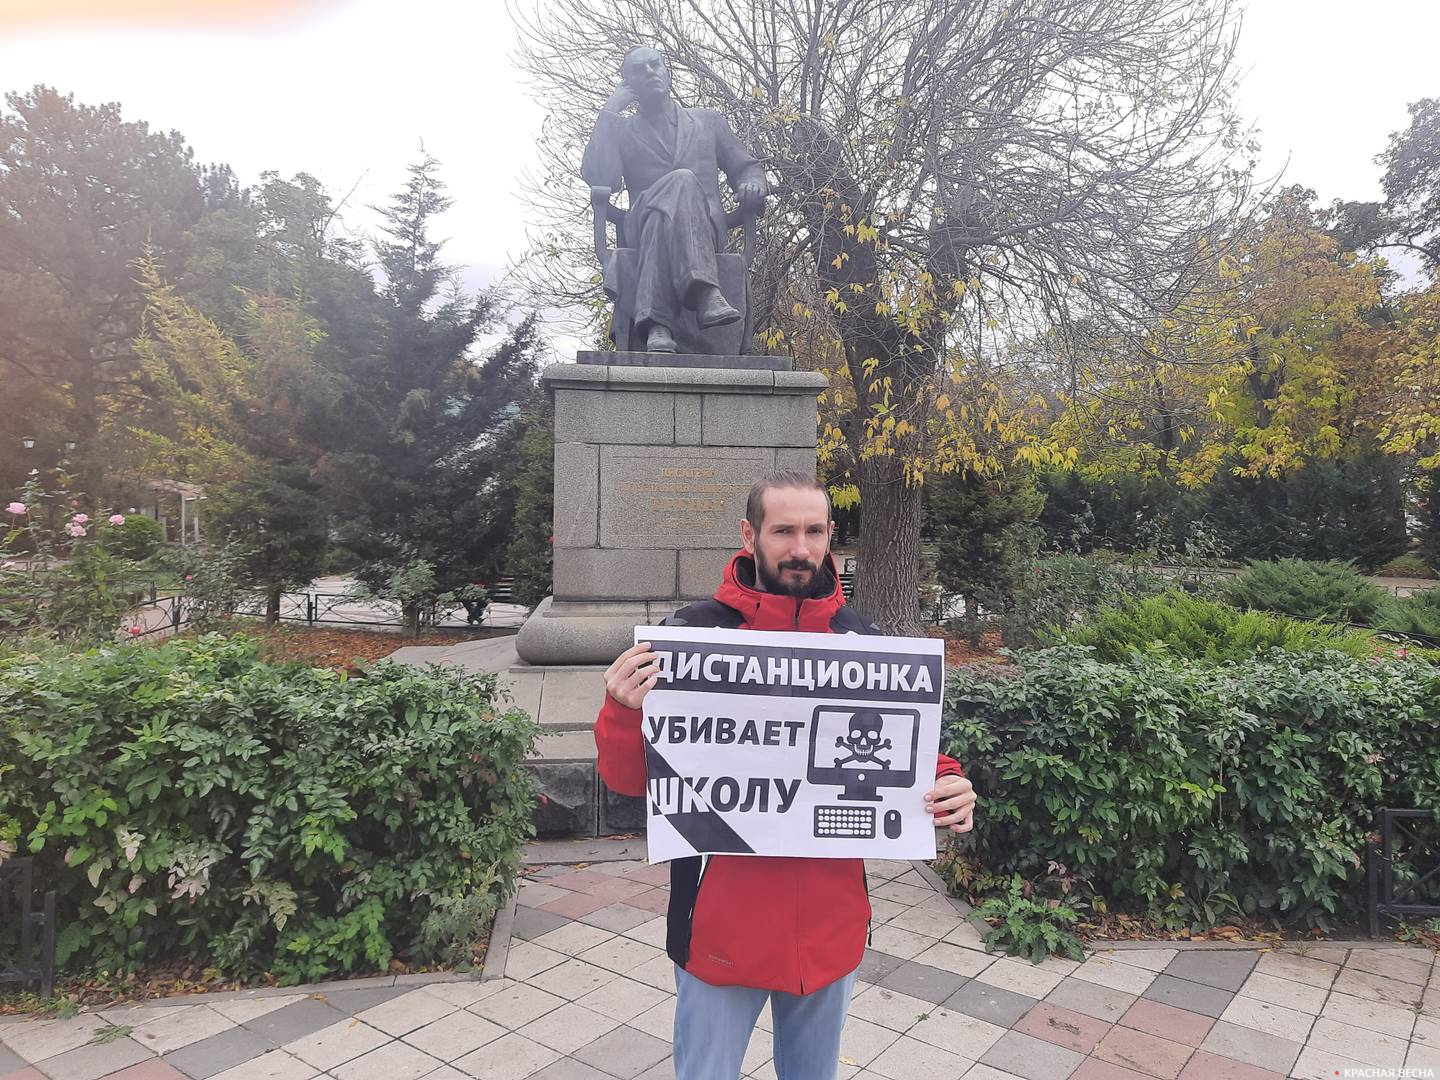 Одиночный пикет против дистанционного образования г. Симферополь 